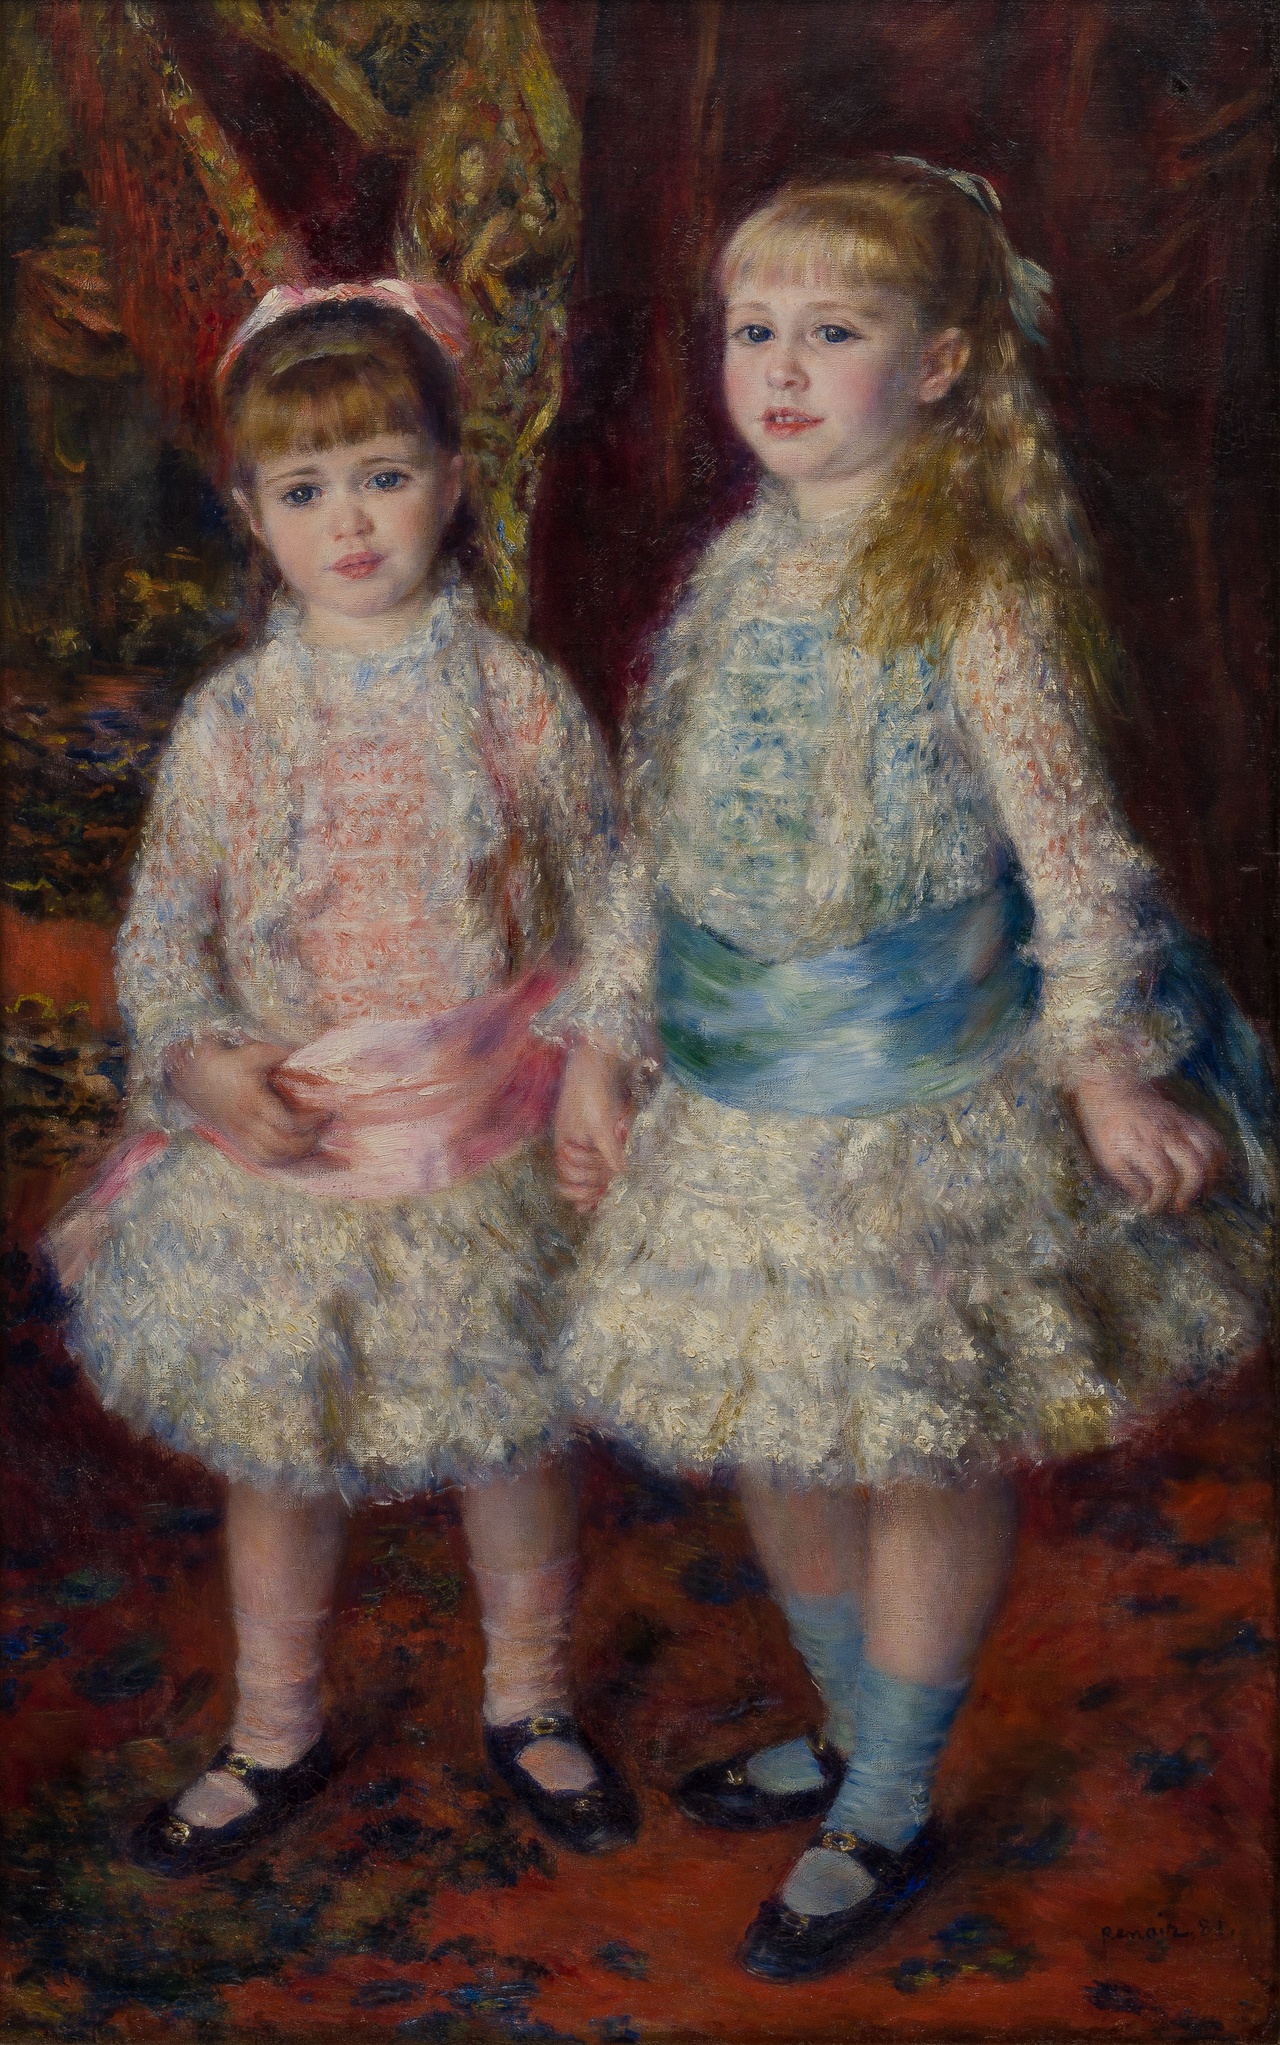 Pierre-Auguste Renoir, “Rose et bleu - Les Demoiselles Cahen d'Anvers (Pink and Blue - The Cahen d’Anvers Girls),” 1881